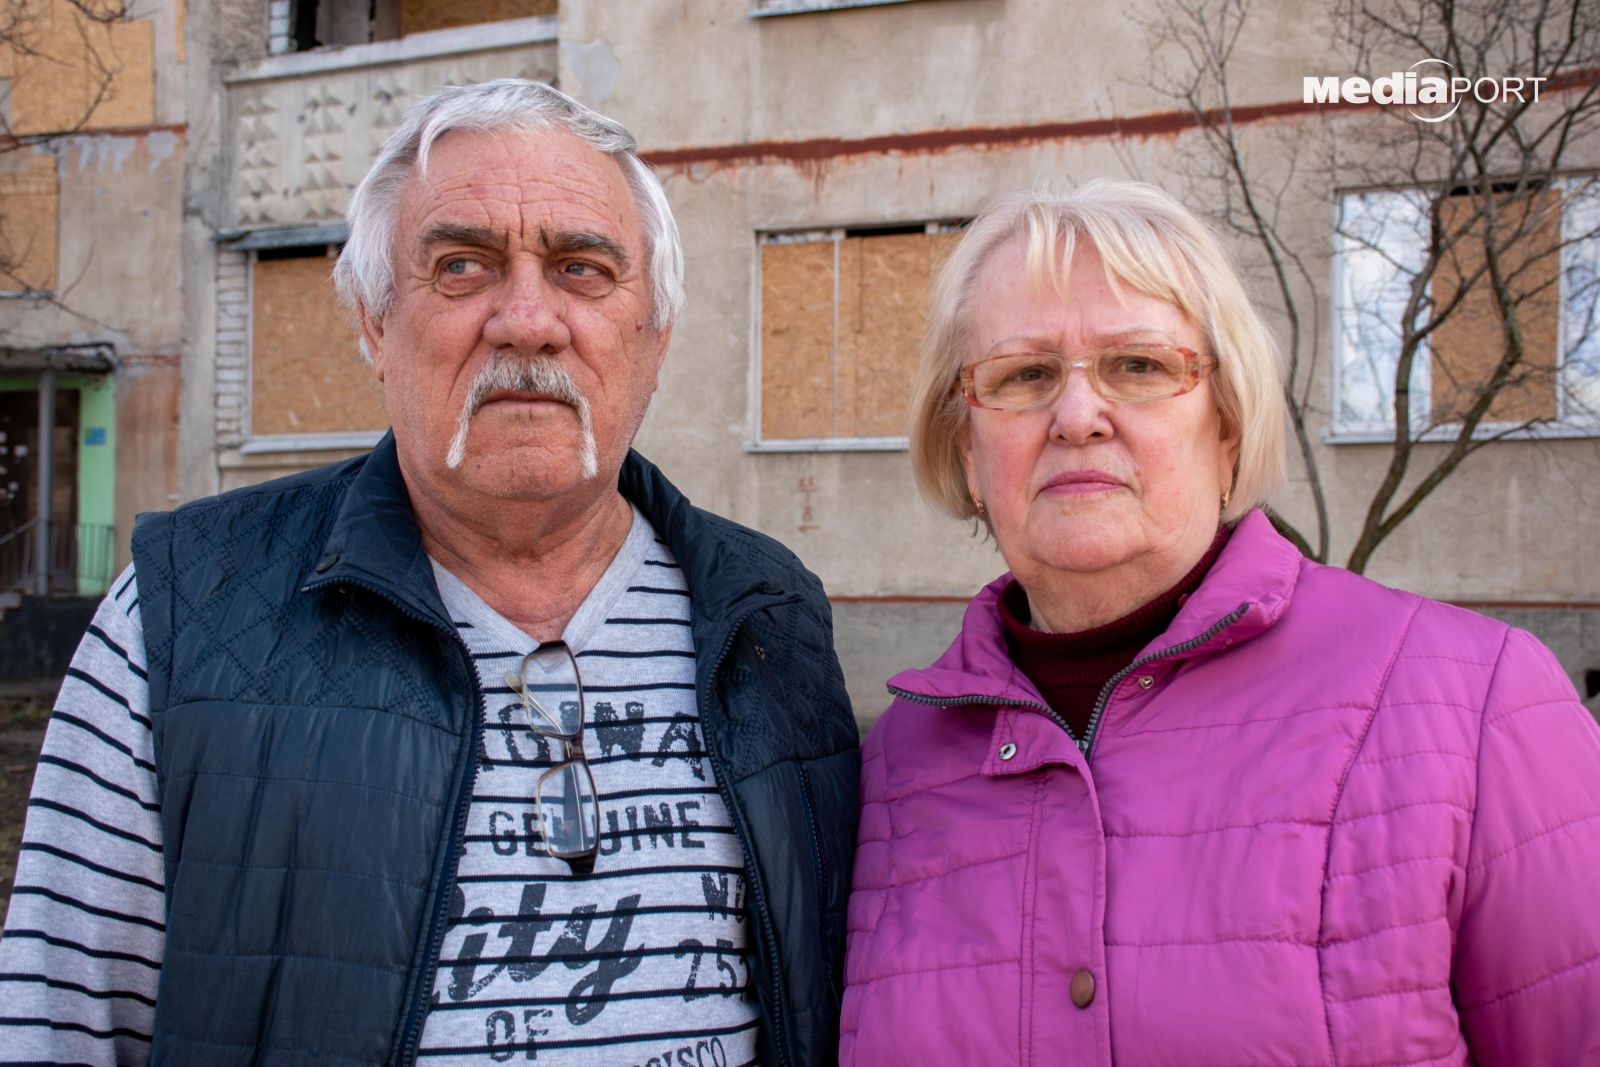 Віктор Чехлатов з дружиною виїхав з Північної Салтівки в інший район. Подружжя навідується додому, але повернутися, щоб жити, не може через вибиті вікна. Сподіваються, що місцева влада допоможе пенсіонерам з відновленням